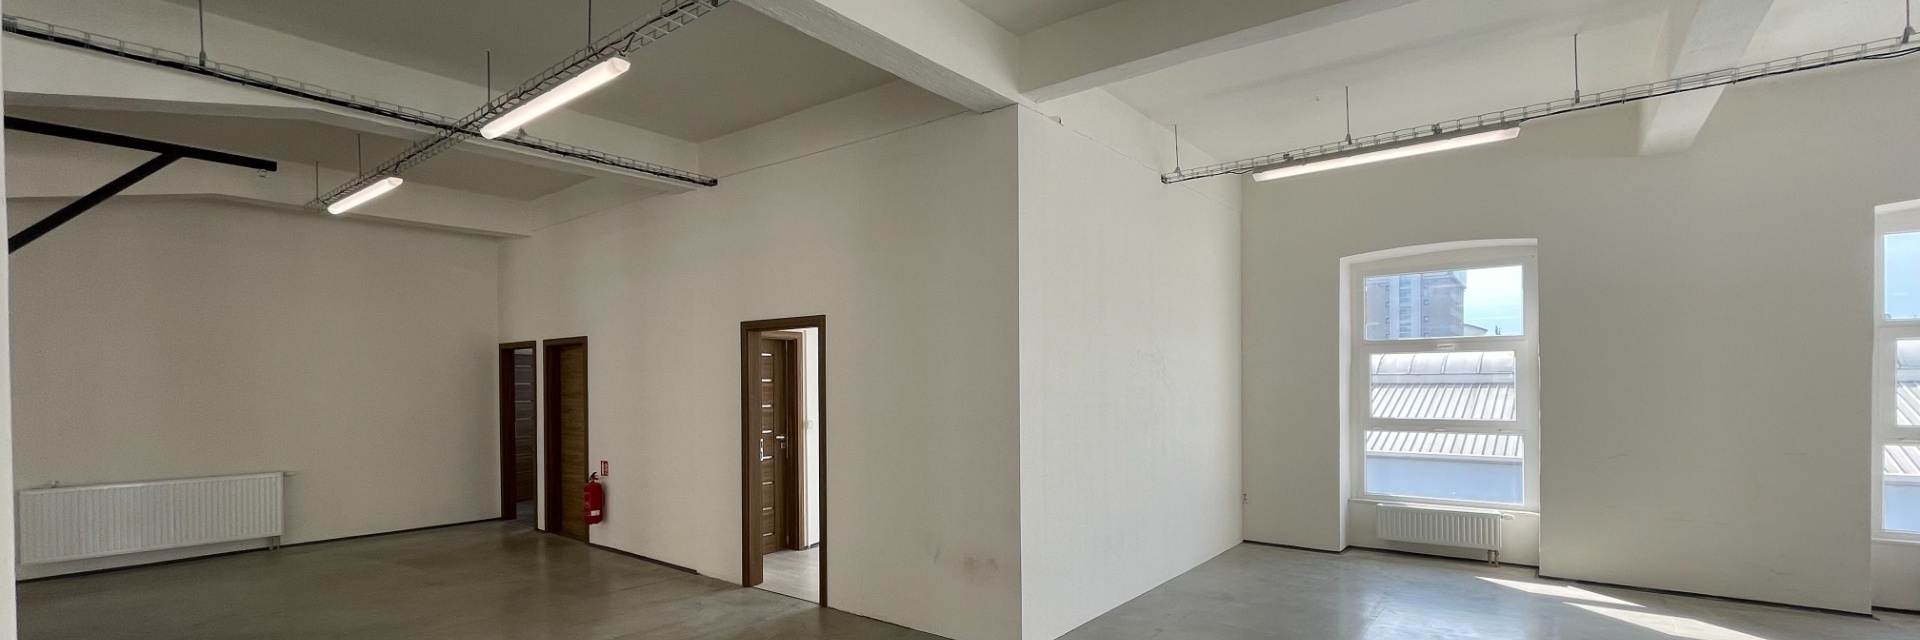 Pronájem nebytových prostor 414 m² po rekonstrukci, ulice Mlýnská, Brno